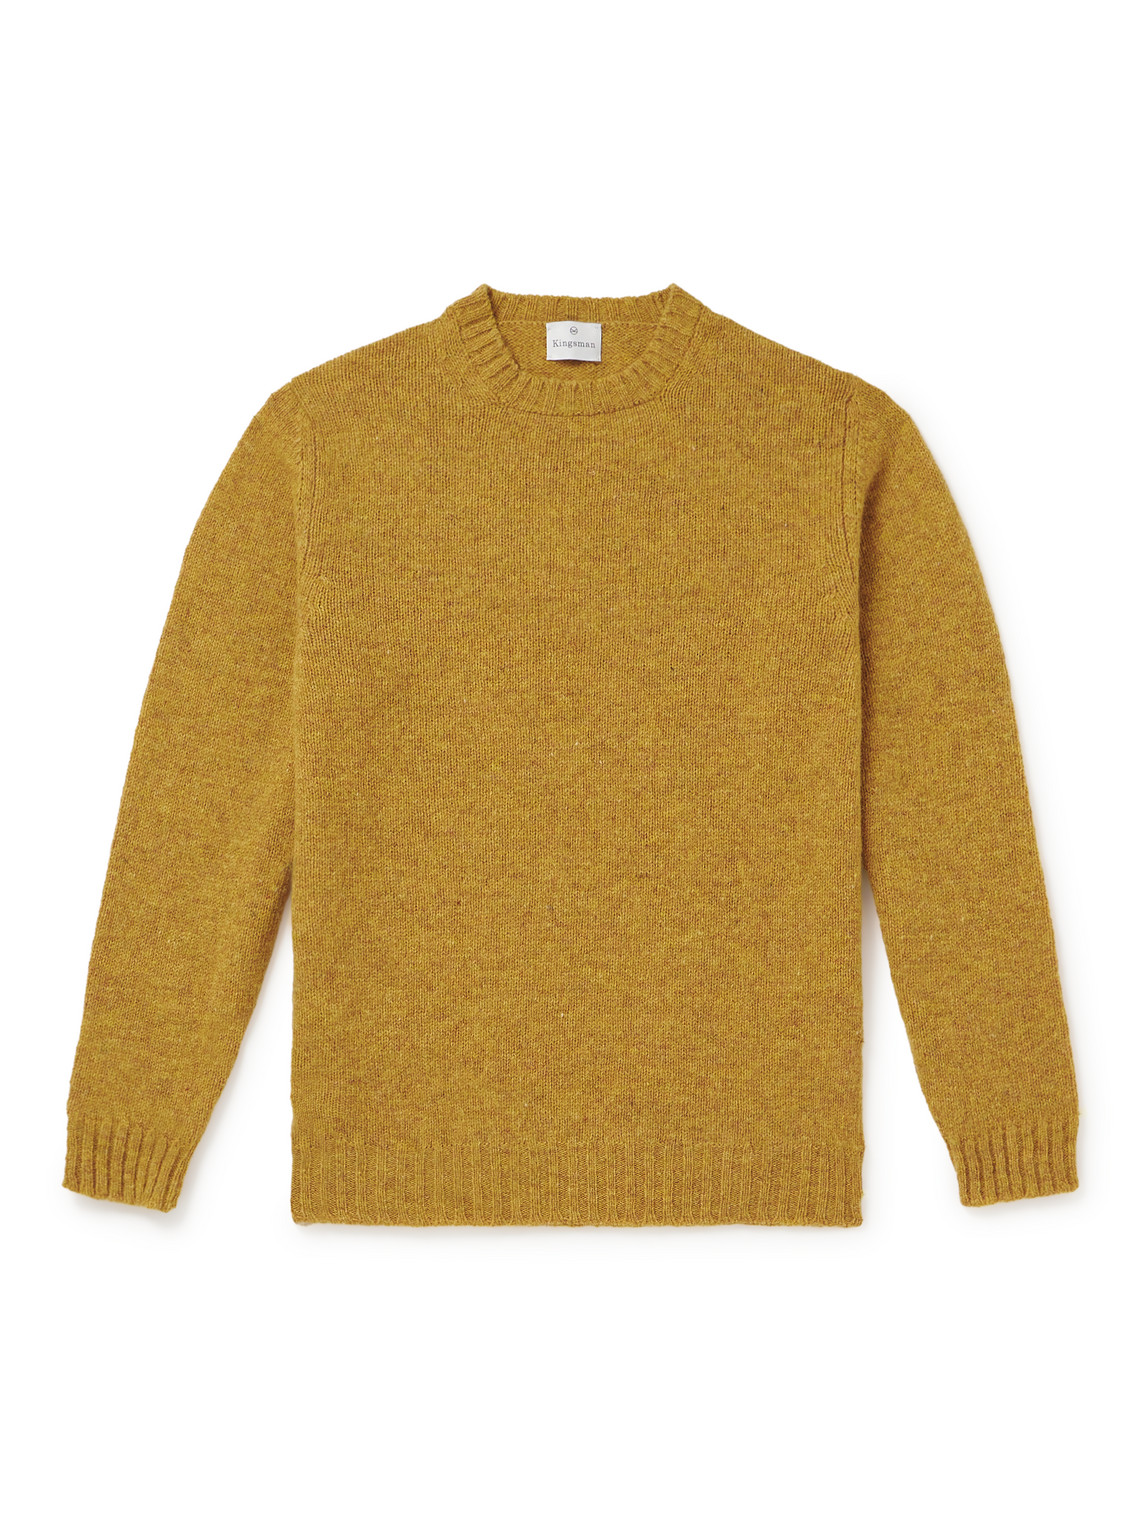 Kingsman Shetland Wool Sweater In Yellow